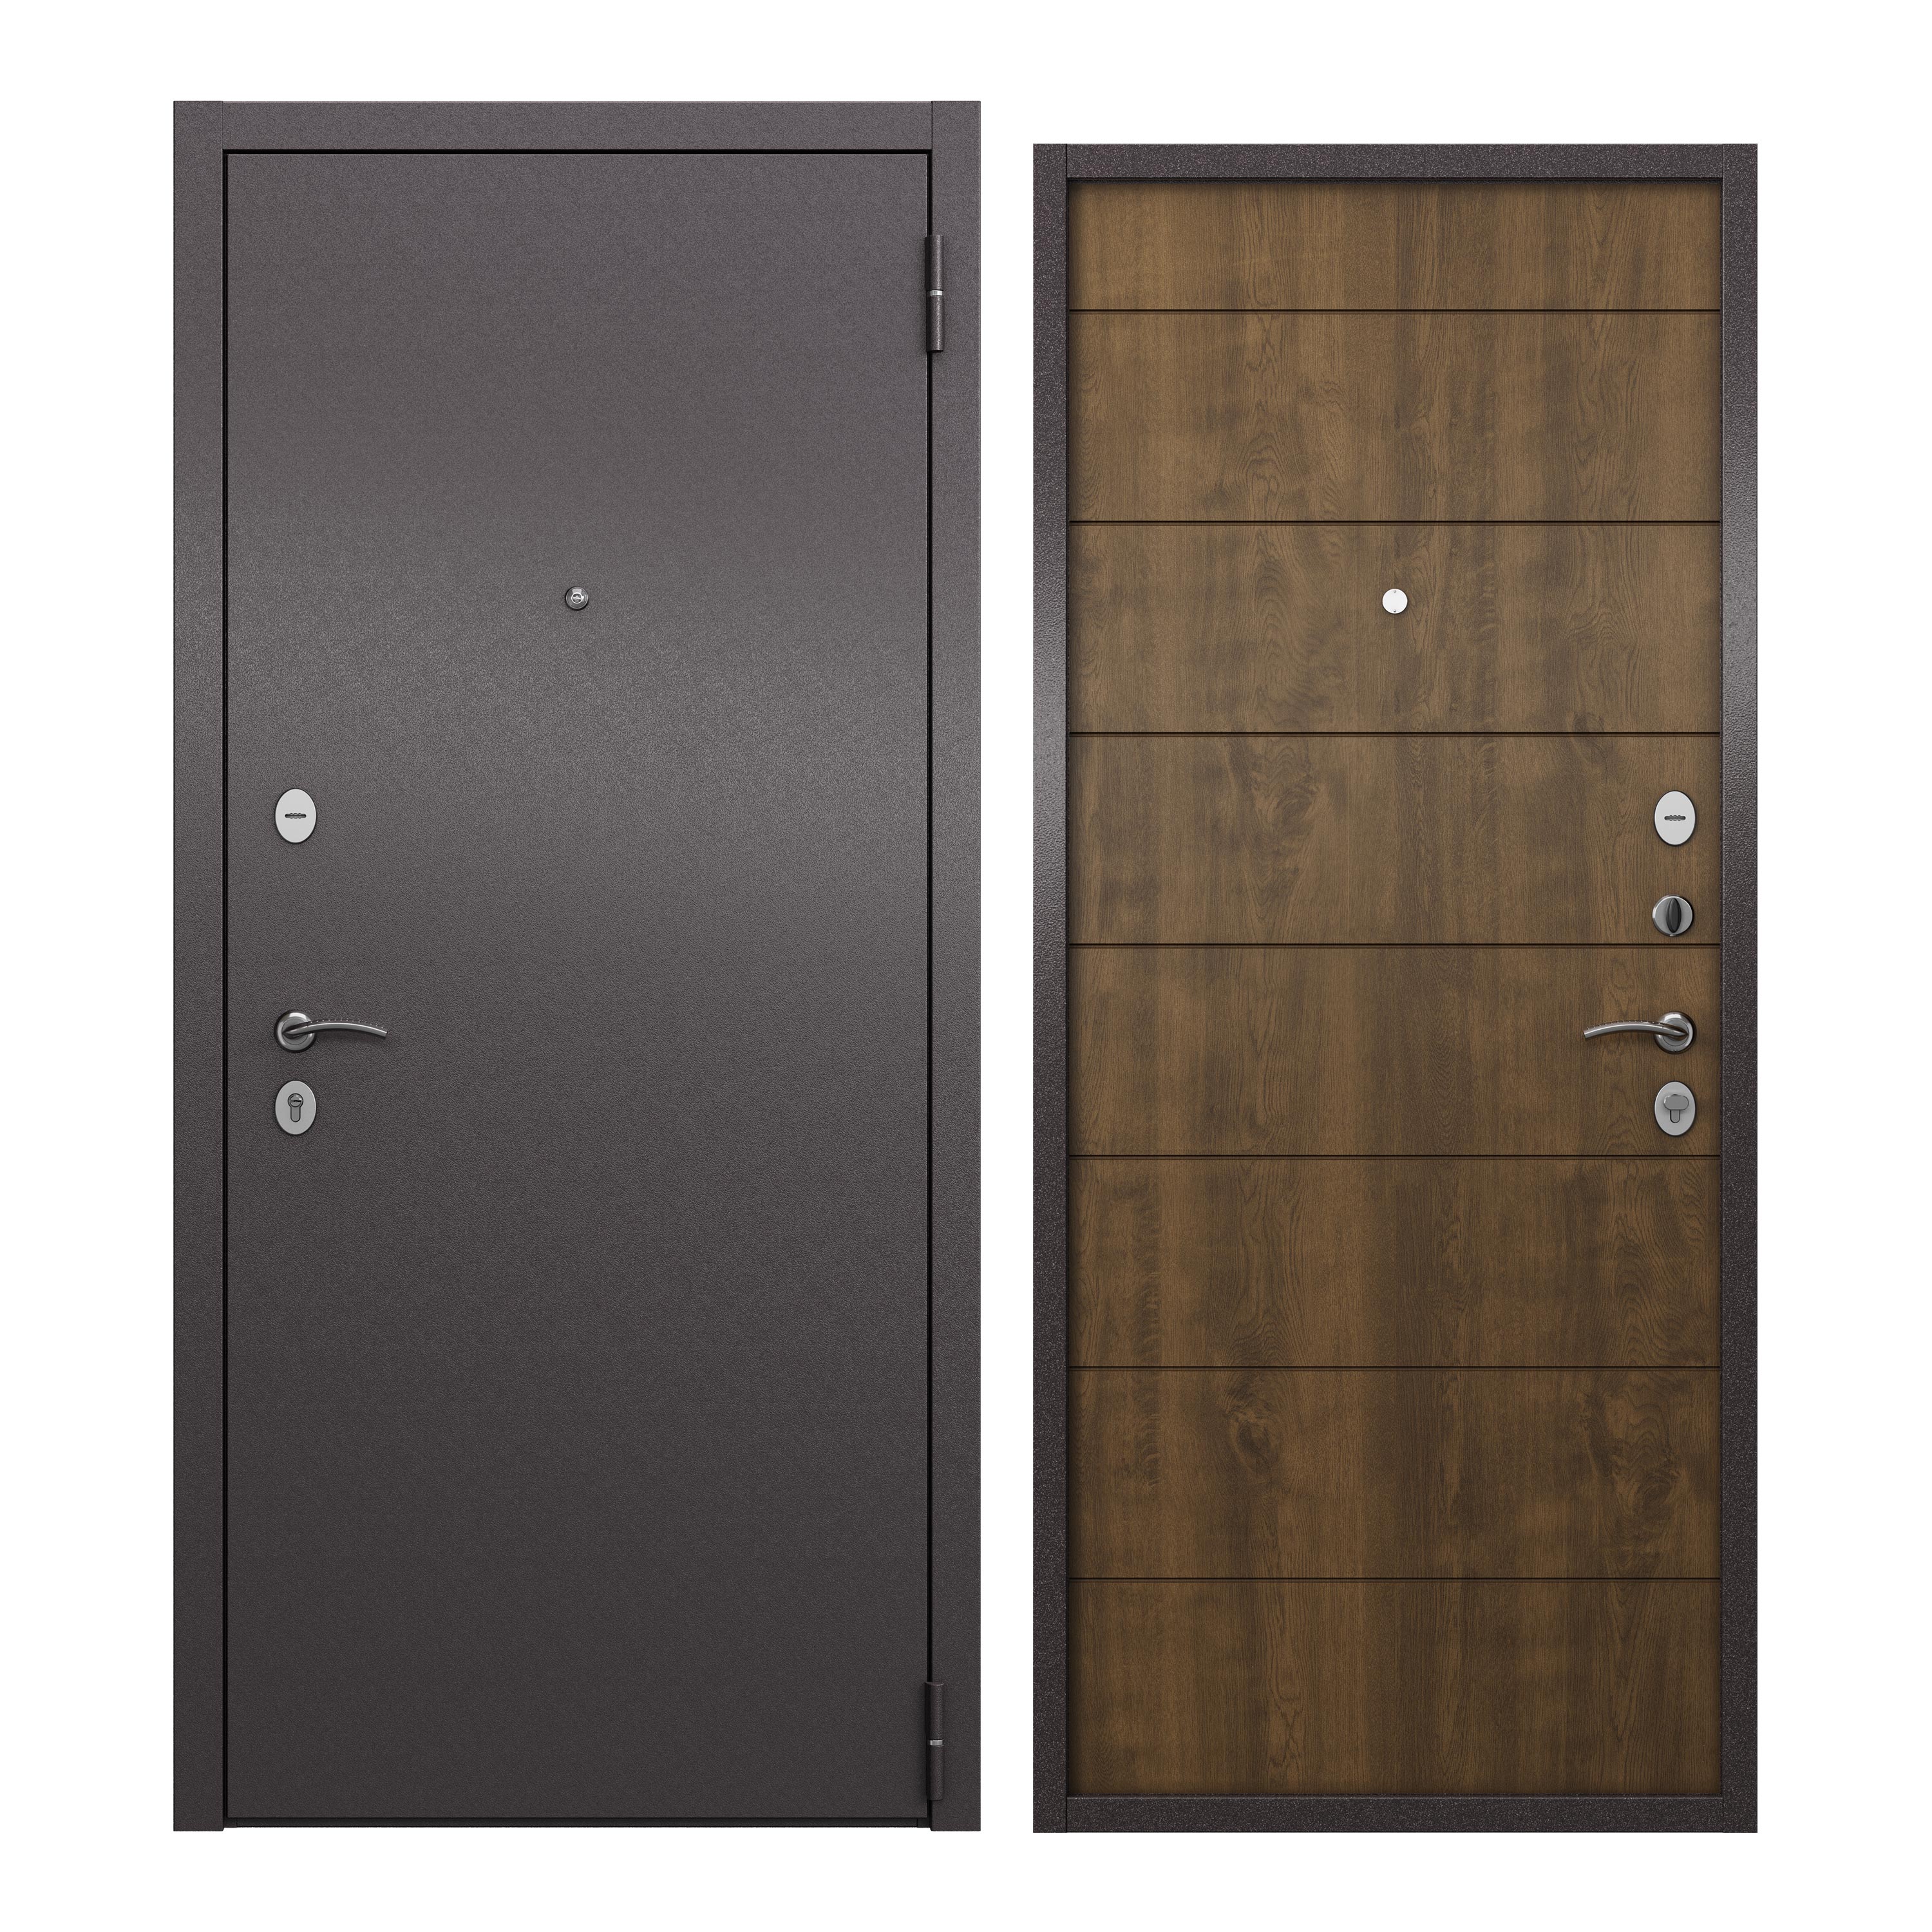 Дверь входная для квартиры ProLine металлическая Apartment 960х2050, правая, коричневый дверь входная buldoors марко левая букле шоколад дуб шале натуральный со стеклом 960х2050 мм